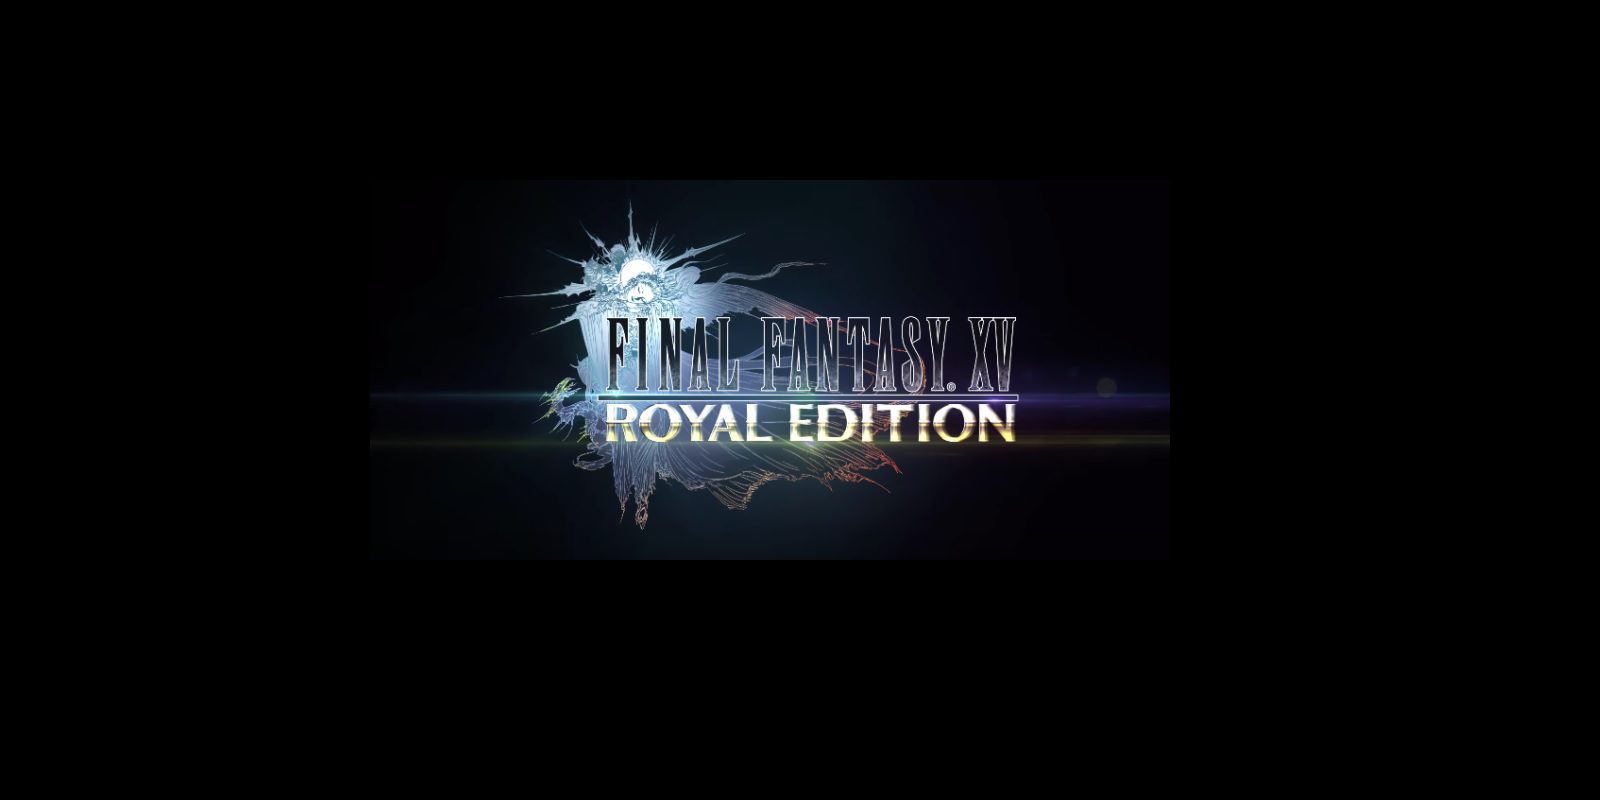 'Final Fantasy XV: Royal Edition': Square Enix rectifica sobre el precio del juego